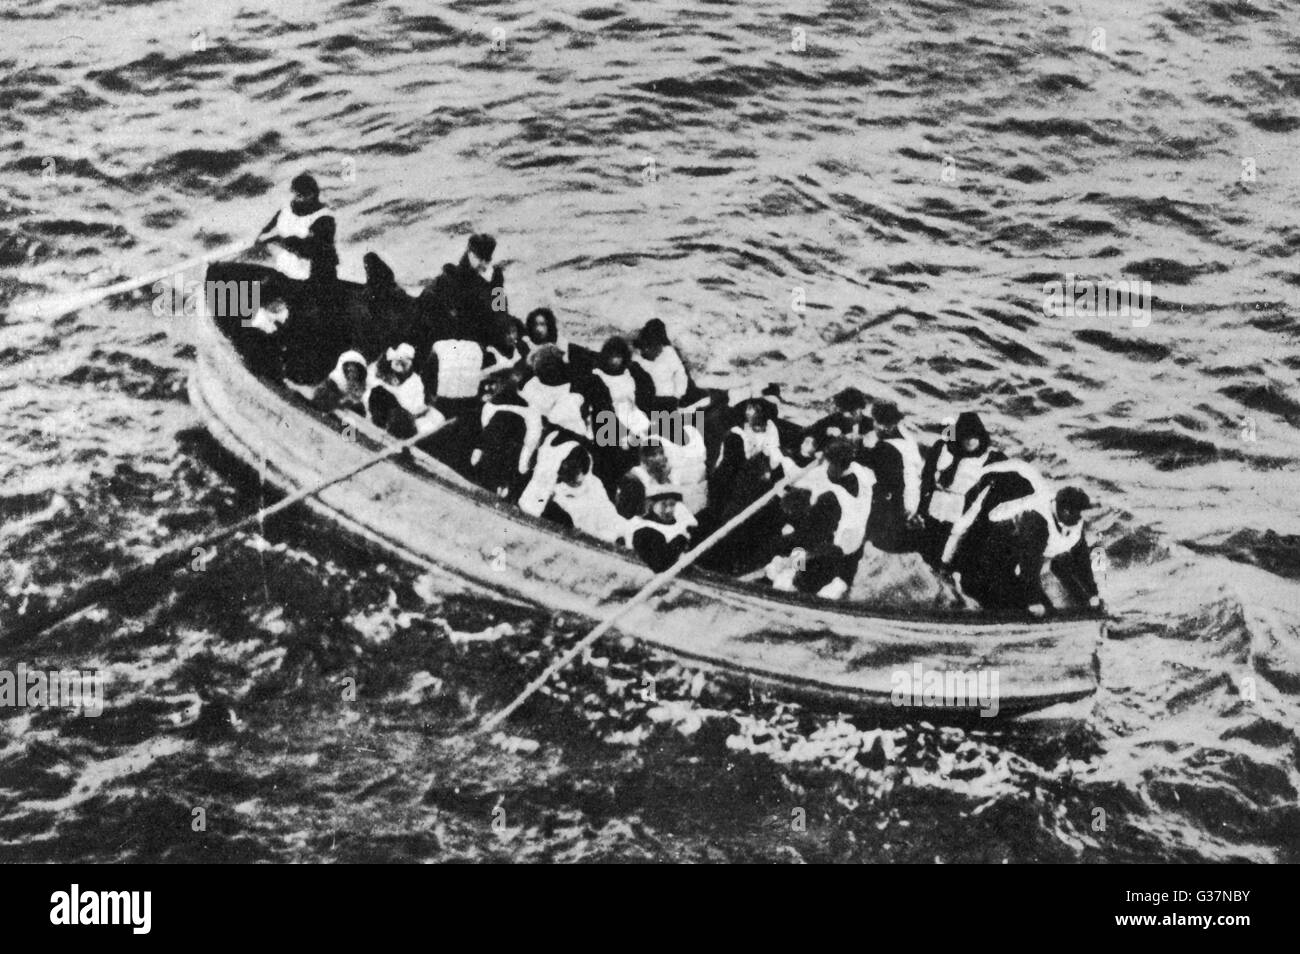 Überlebenden vom Deck der "Carpathia" (eines der Schiffe, die Überlebenden aus dem Wrack dauerte) gesehen.       Datum: 1912 Stockfoto